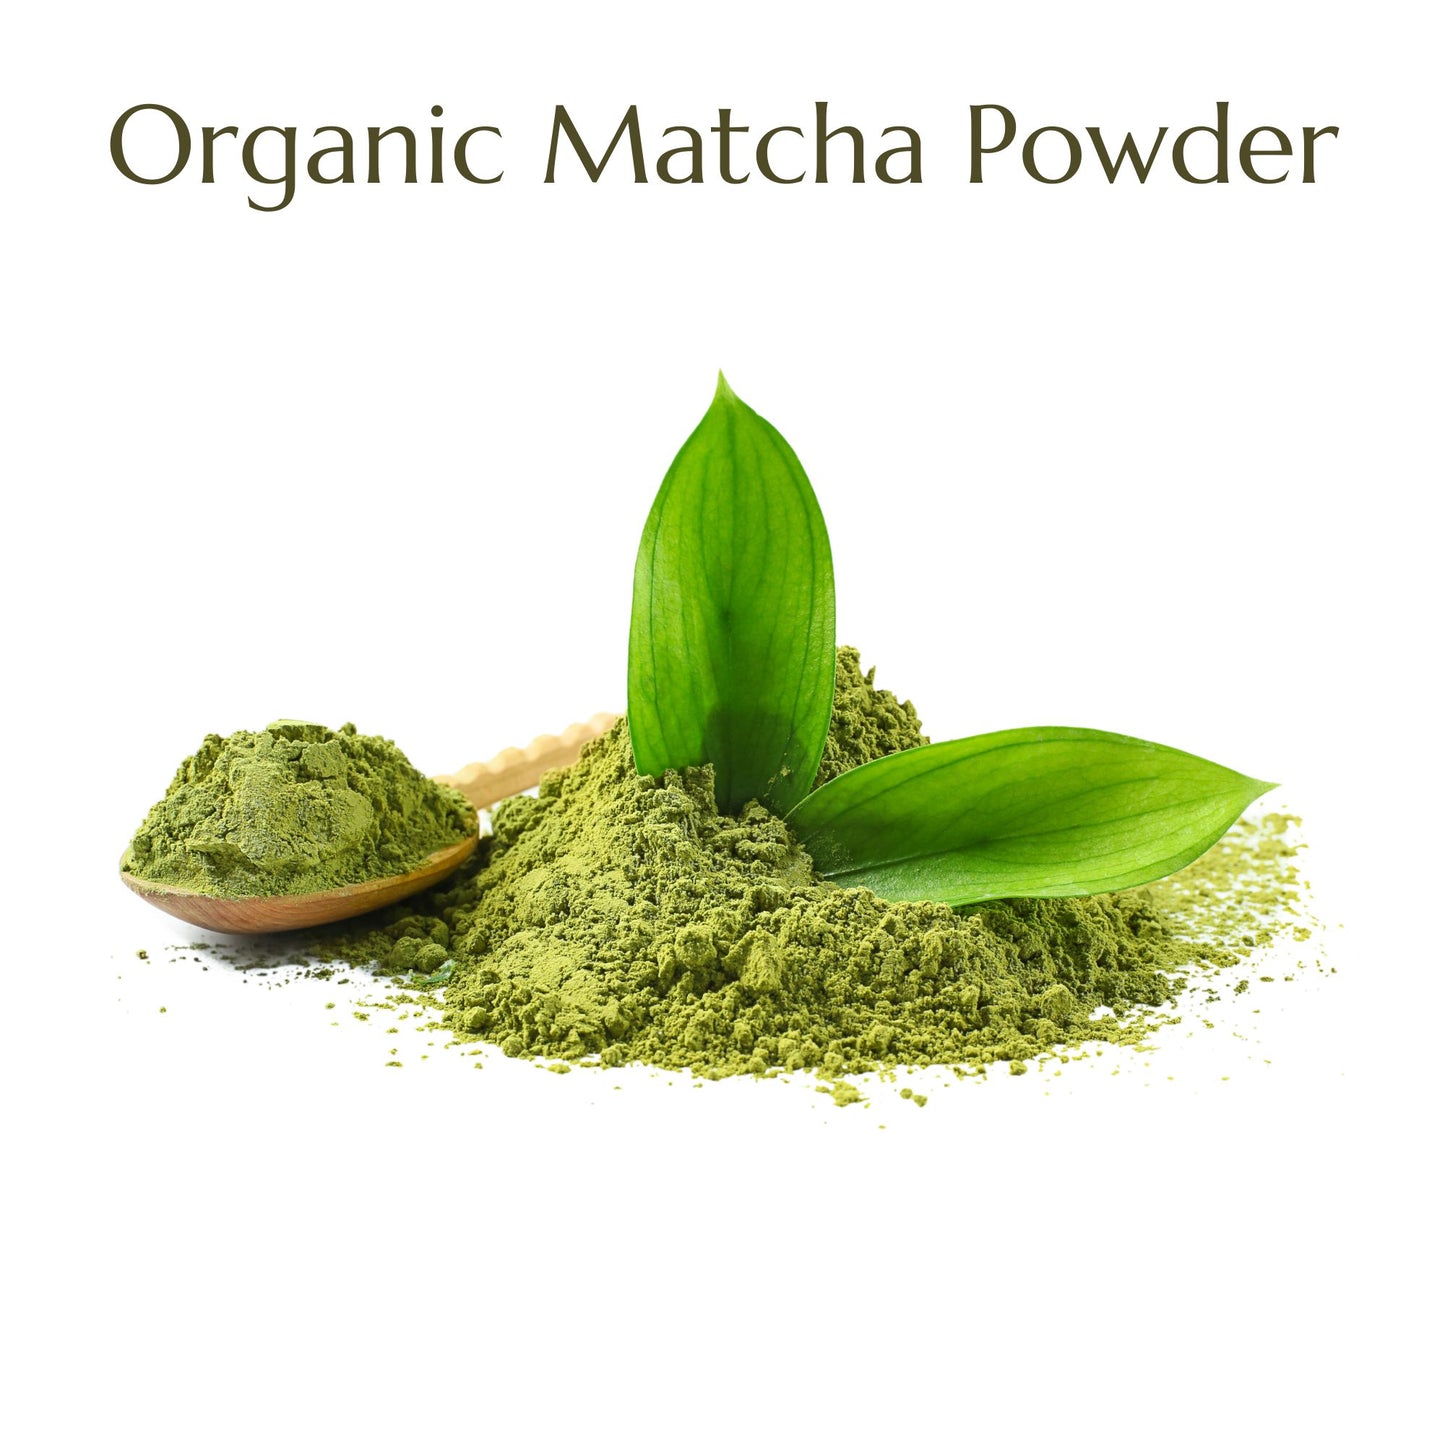 Anna's Teapot Organic Matcha Green Tea Powder from Japan - Pure Matcha Tea Powder for Matcha Tea and Matcha Latte in a Resealable Pouch